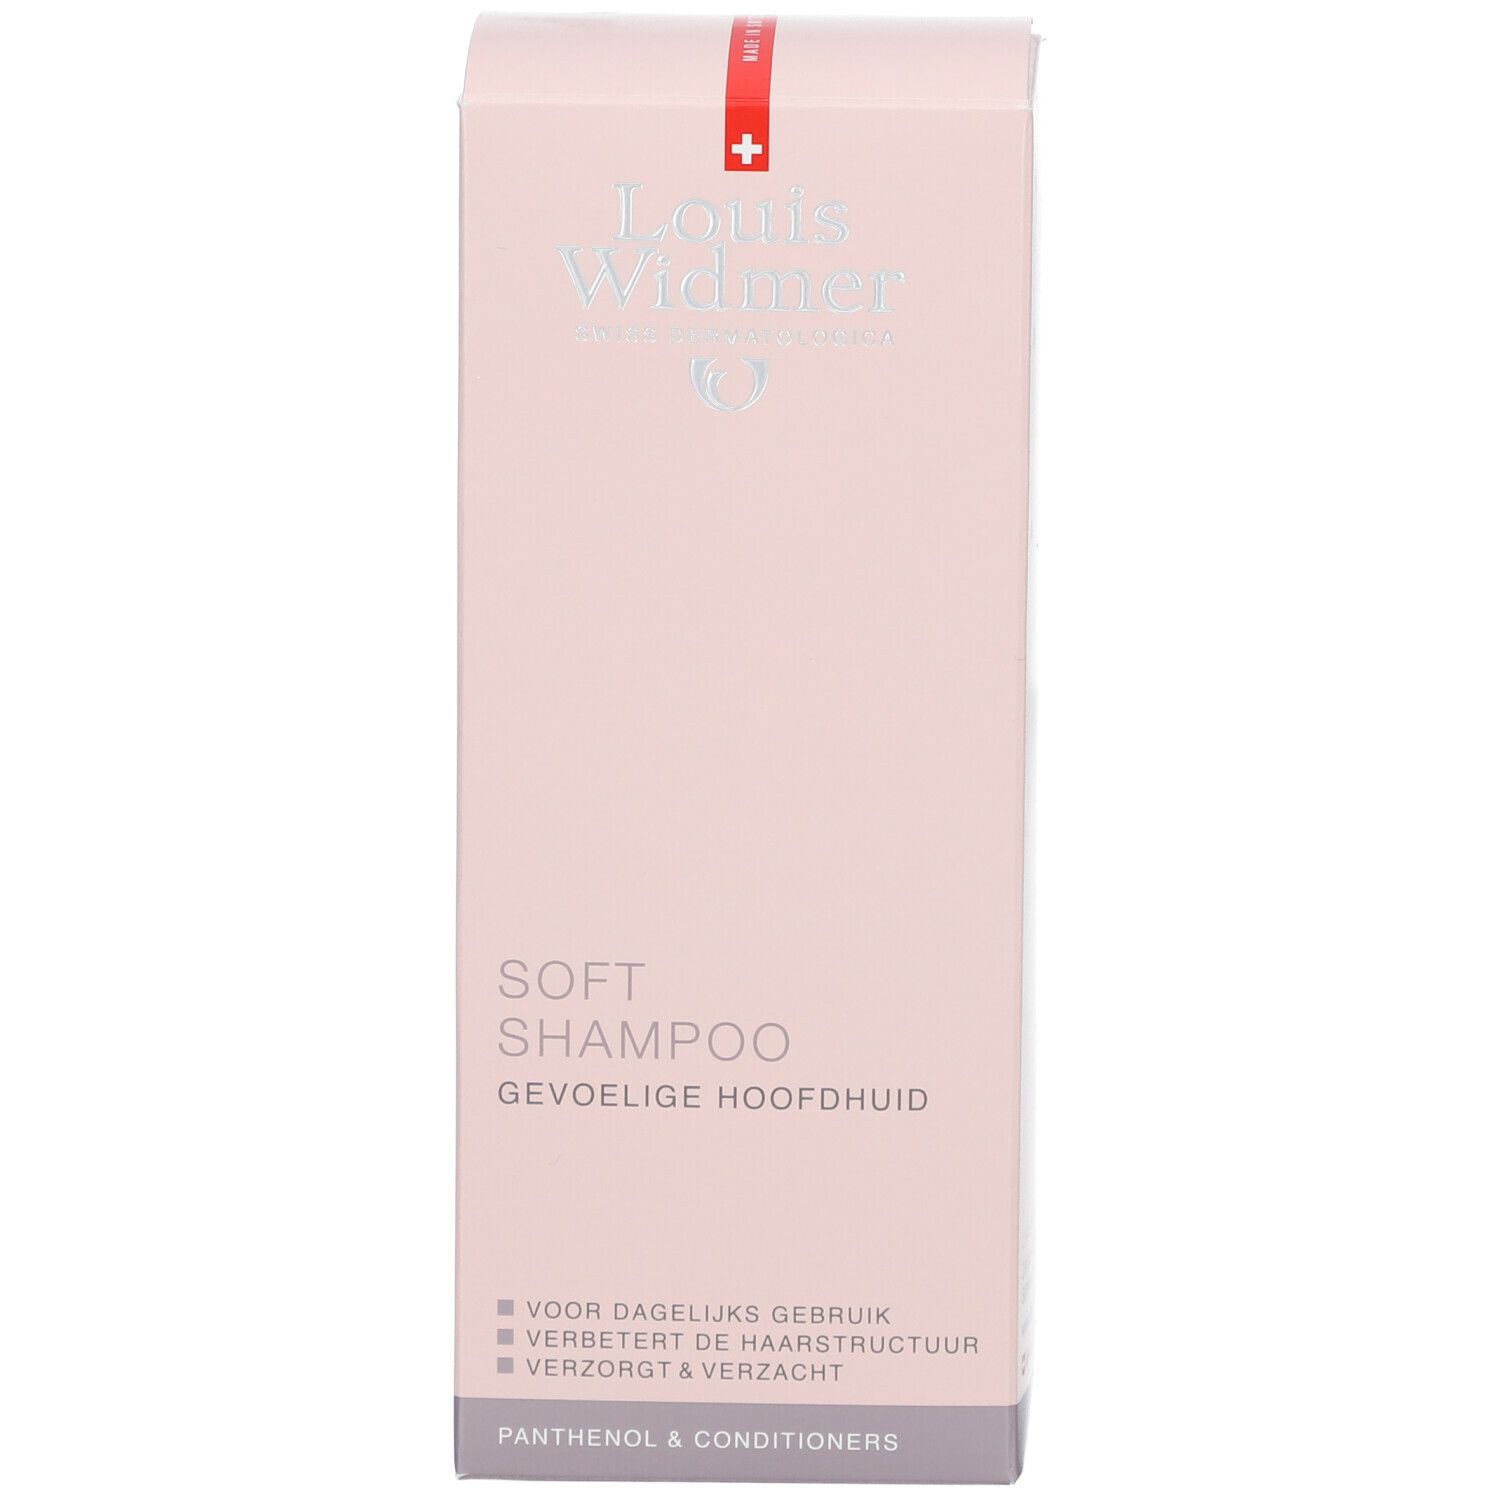 Louis Widmer Soft Shampoo + Panthenol leicht parfümiert